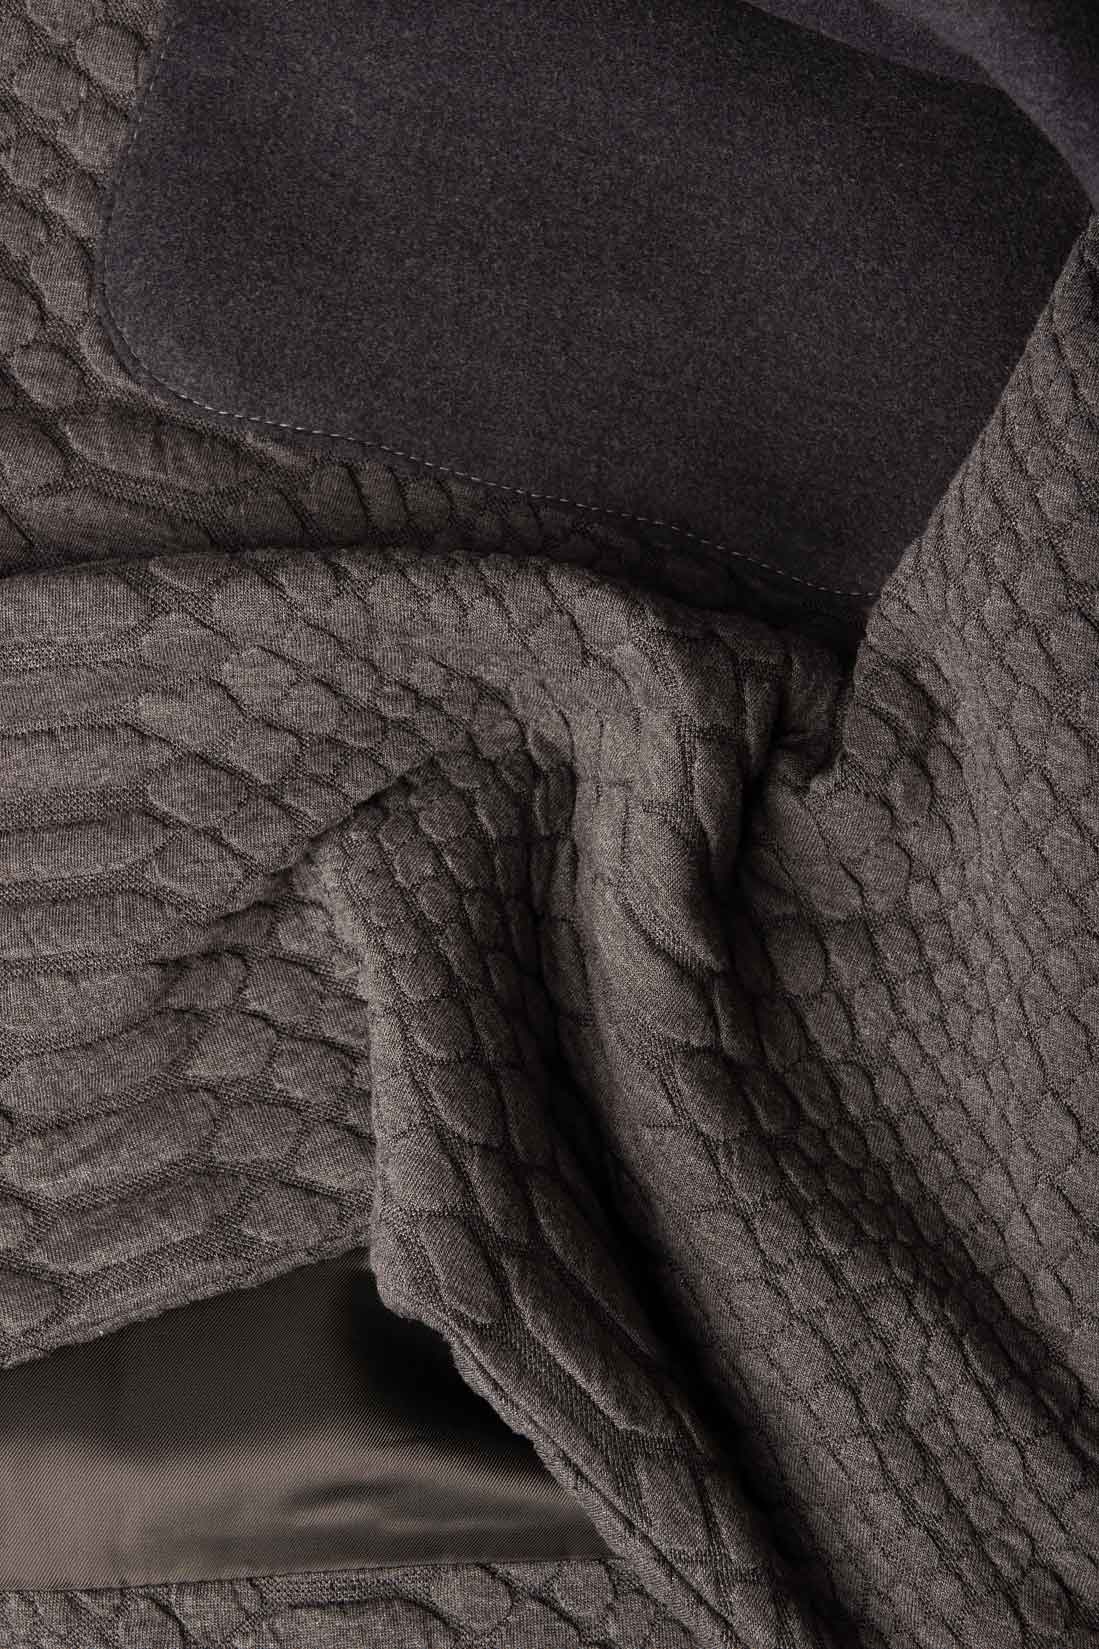 Capa din stofa cu textura de piele de sarpe Constantine Renakossy imagine 3